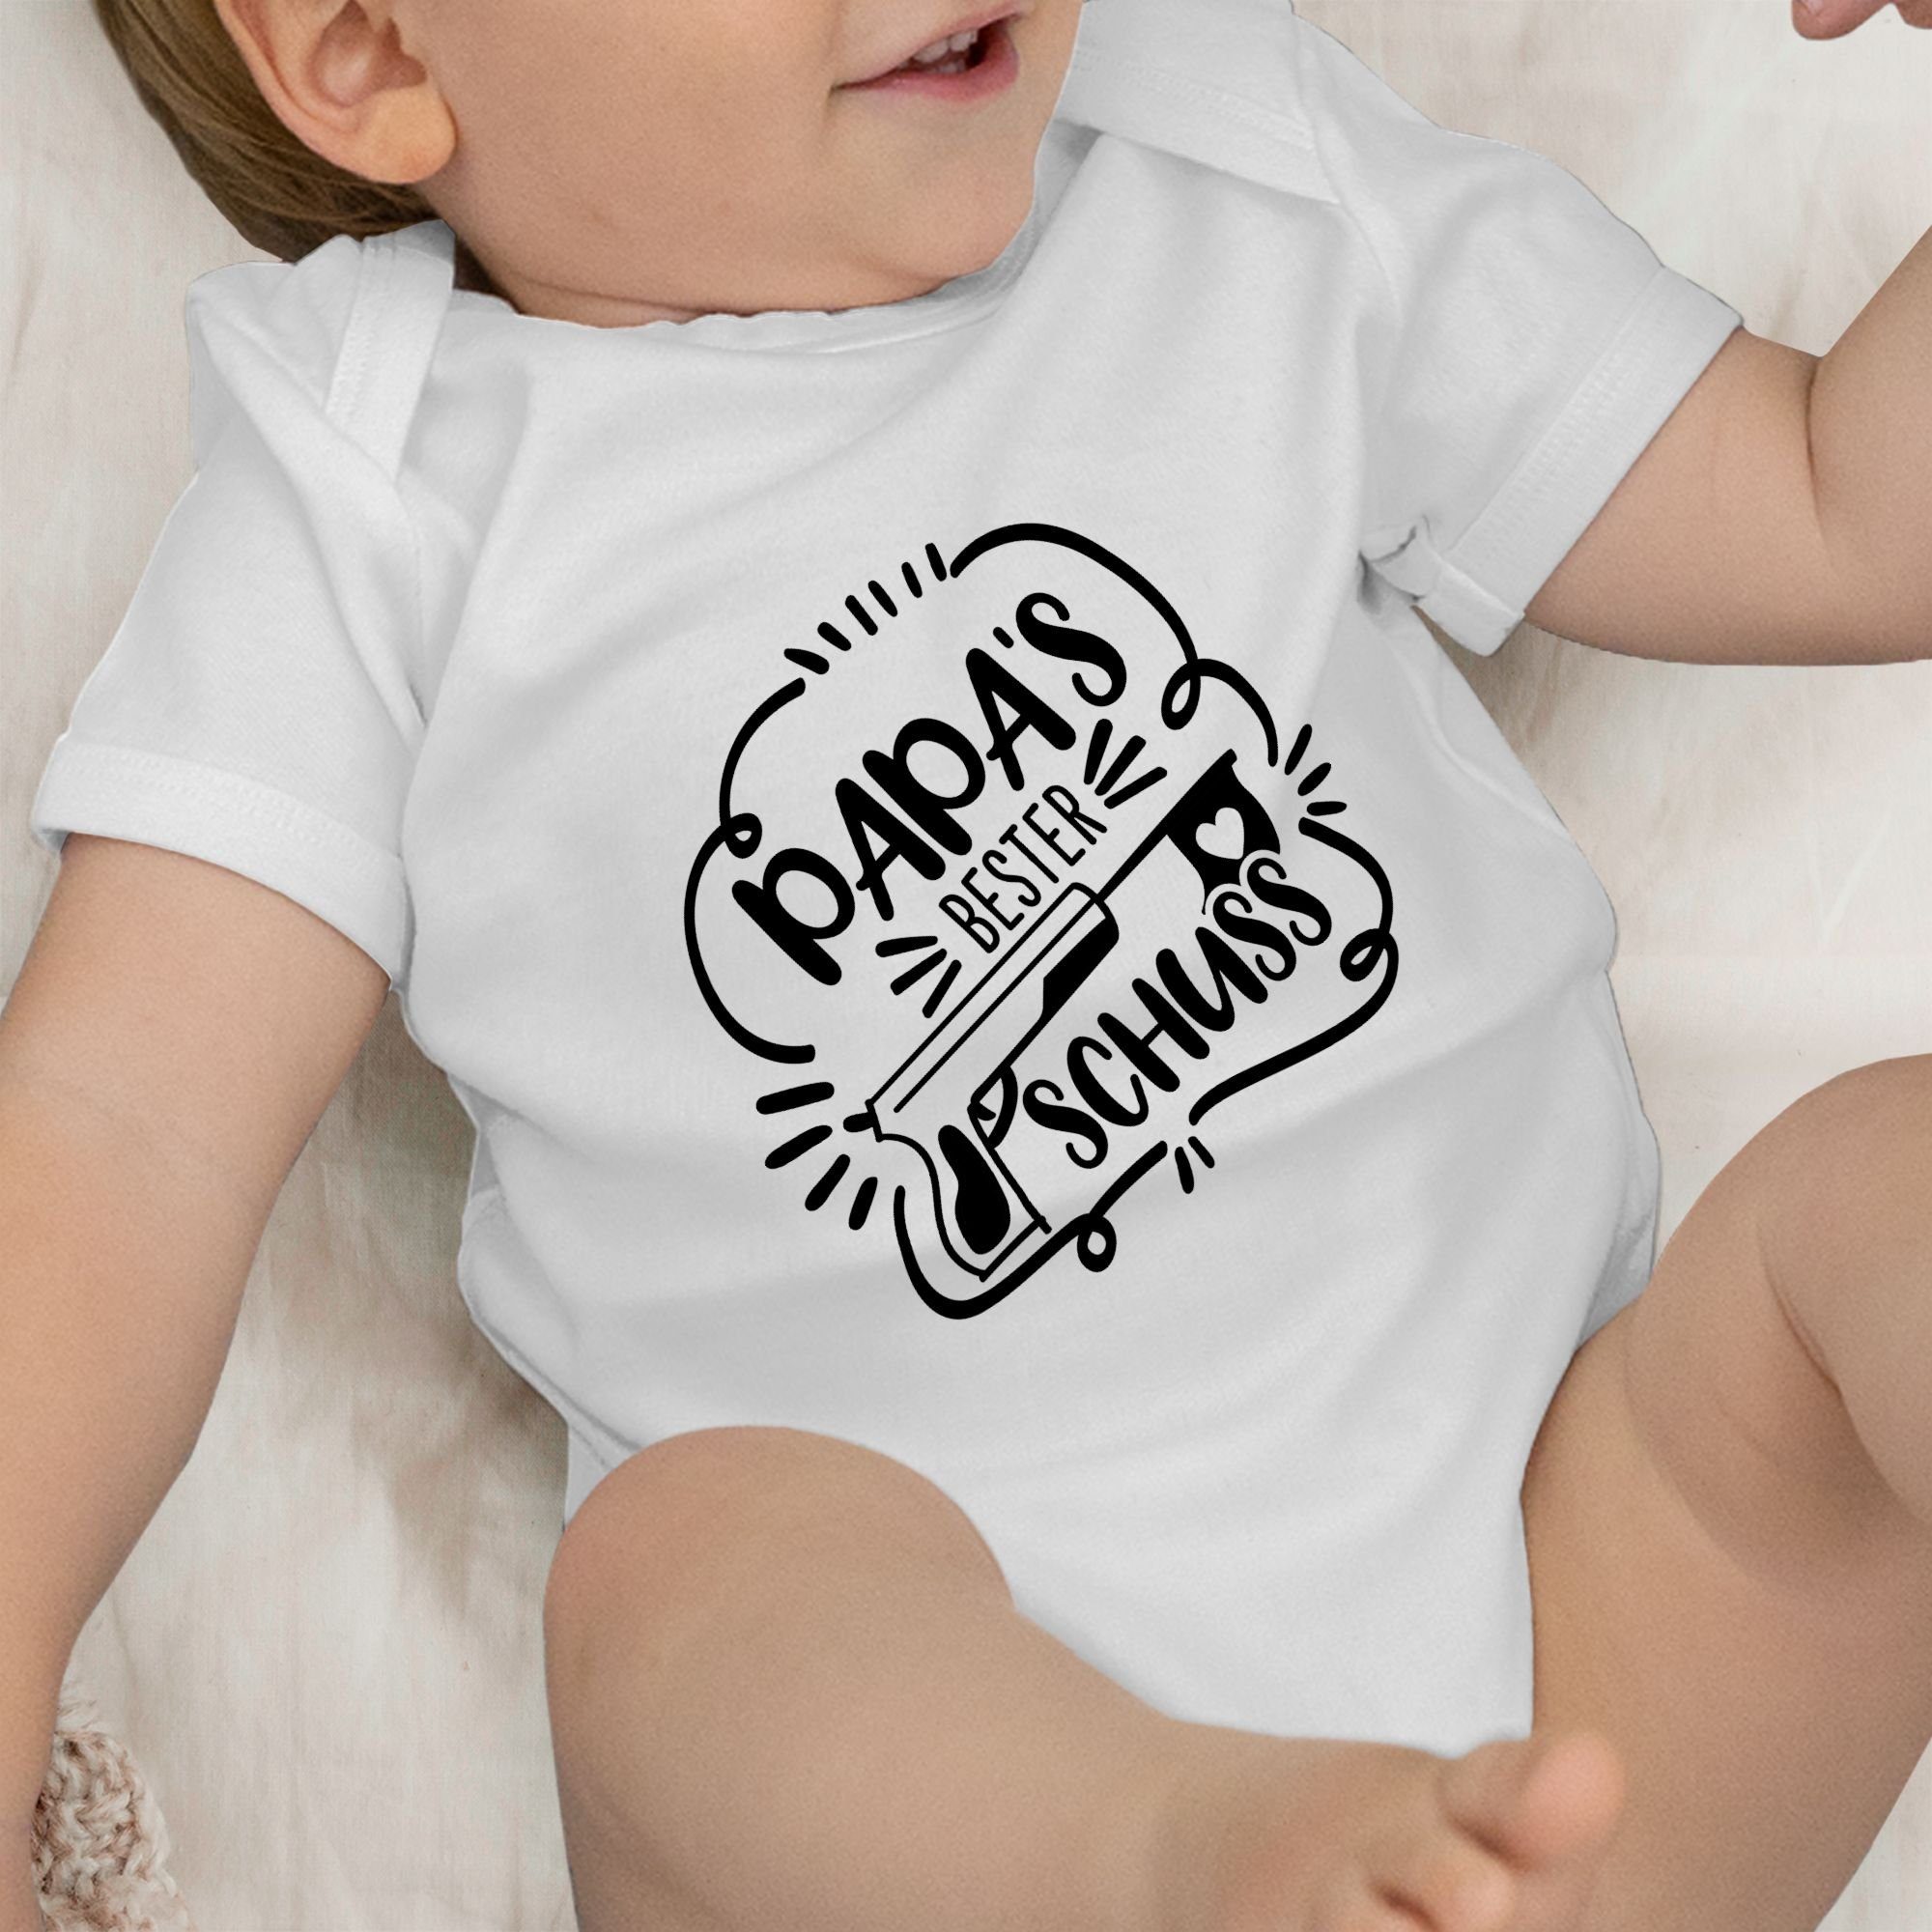 Shirtracer Shirtbody Papas Baby schwarz Weiß Vatertag Comic 3 bester Treffer Geschenk